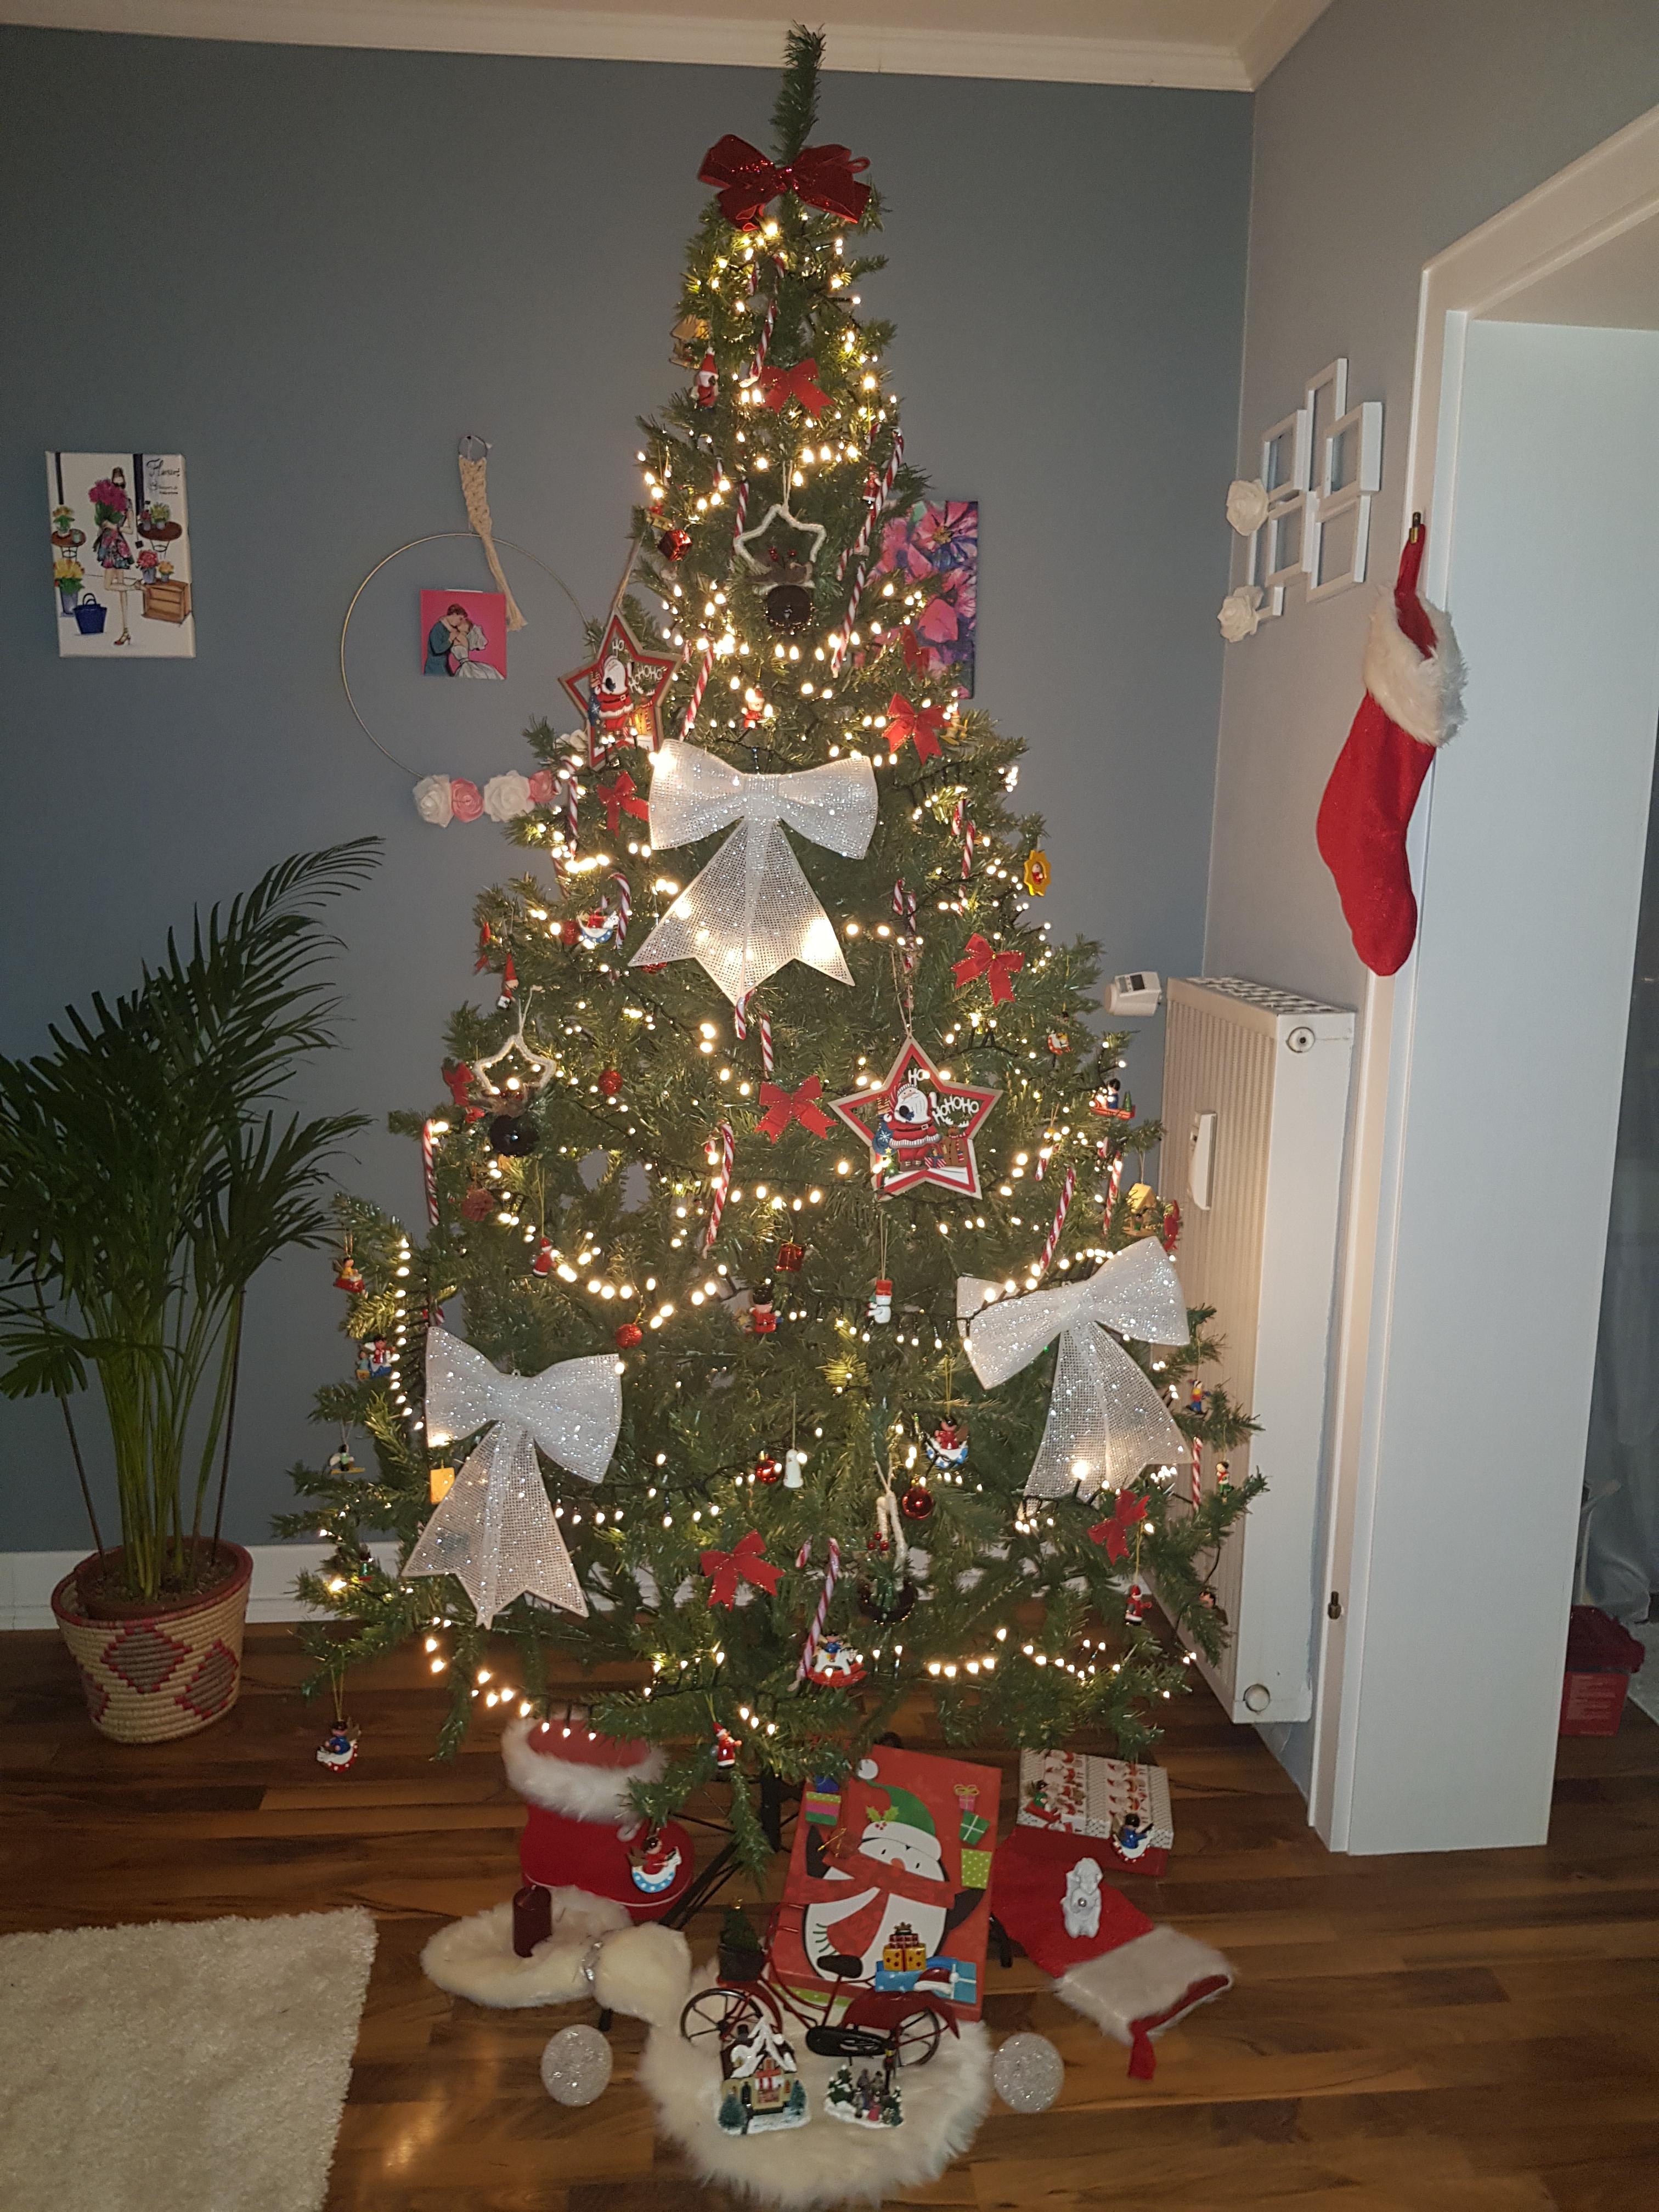 #christmas #lights #weihnachten #baum #deko #decoration #homestyle #homeinspo